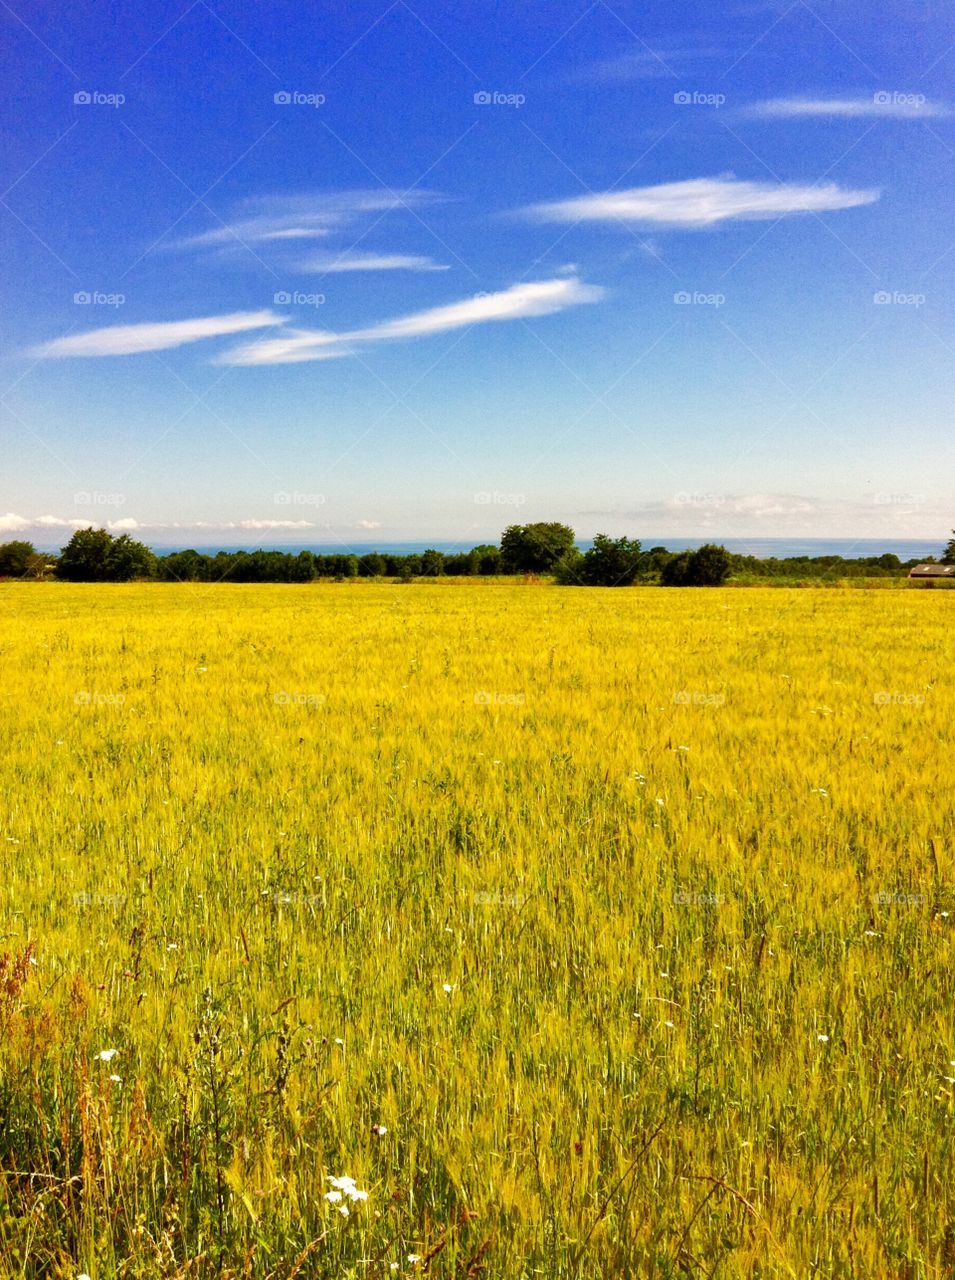 Yellow field, blue sky